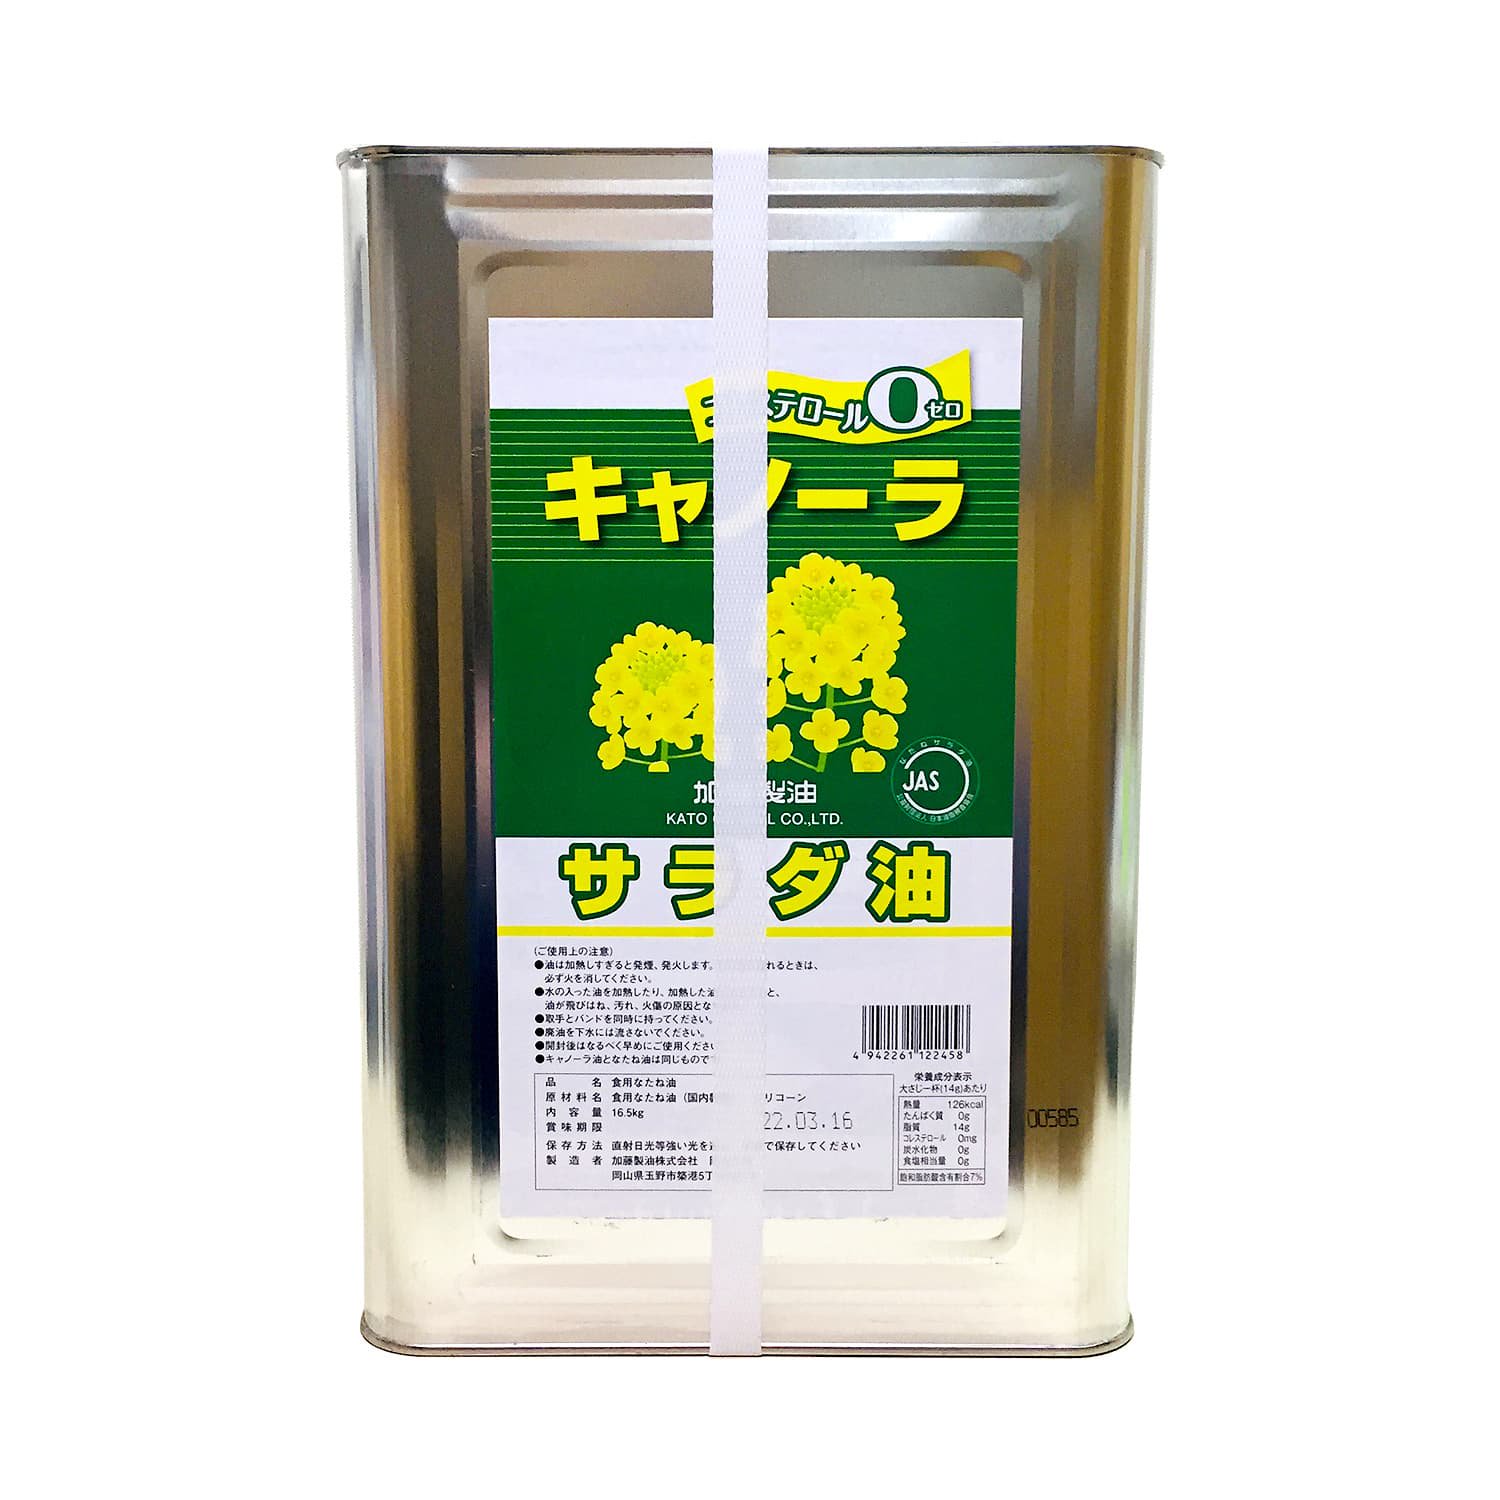 キャノーラ油1斗缶